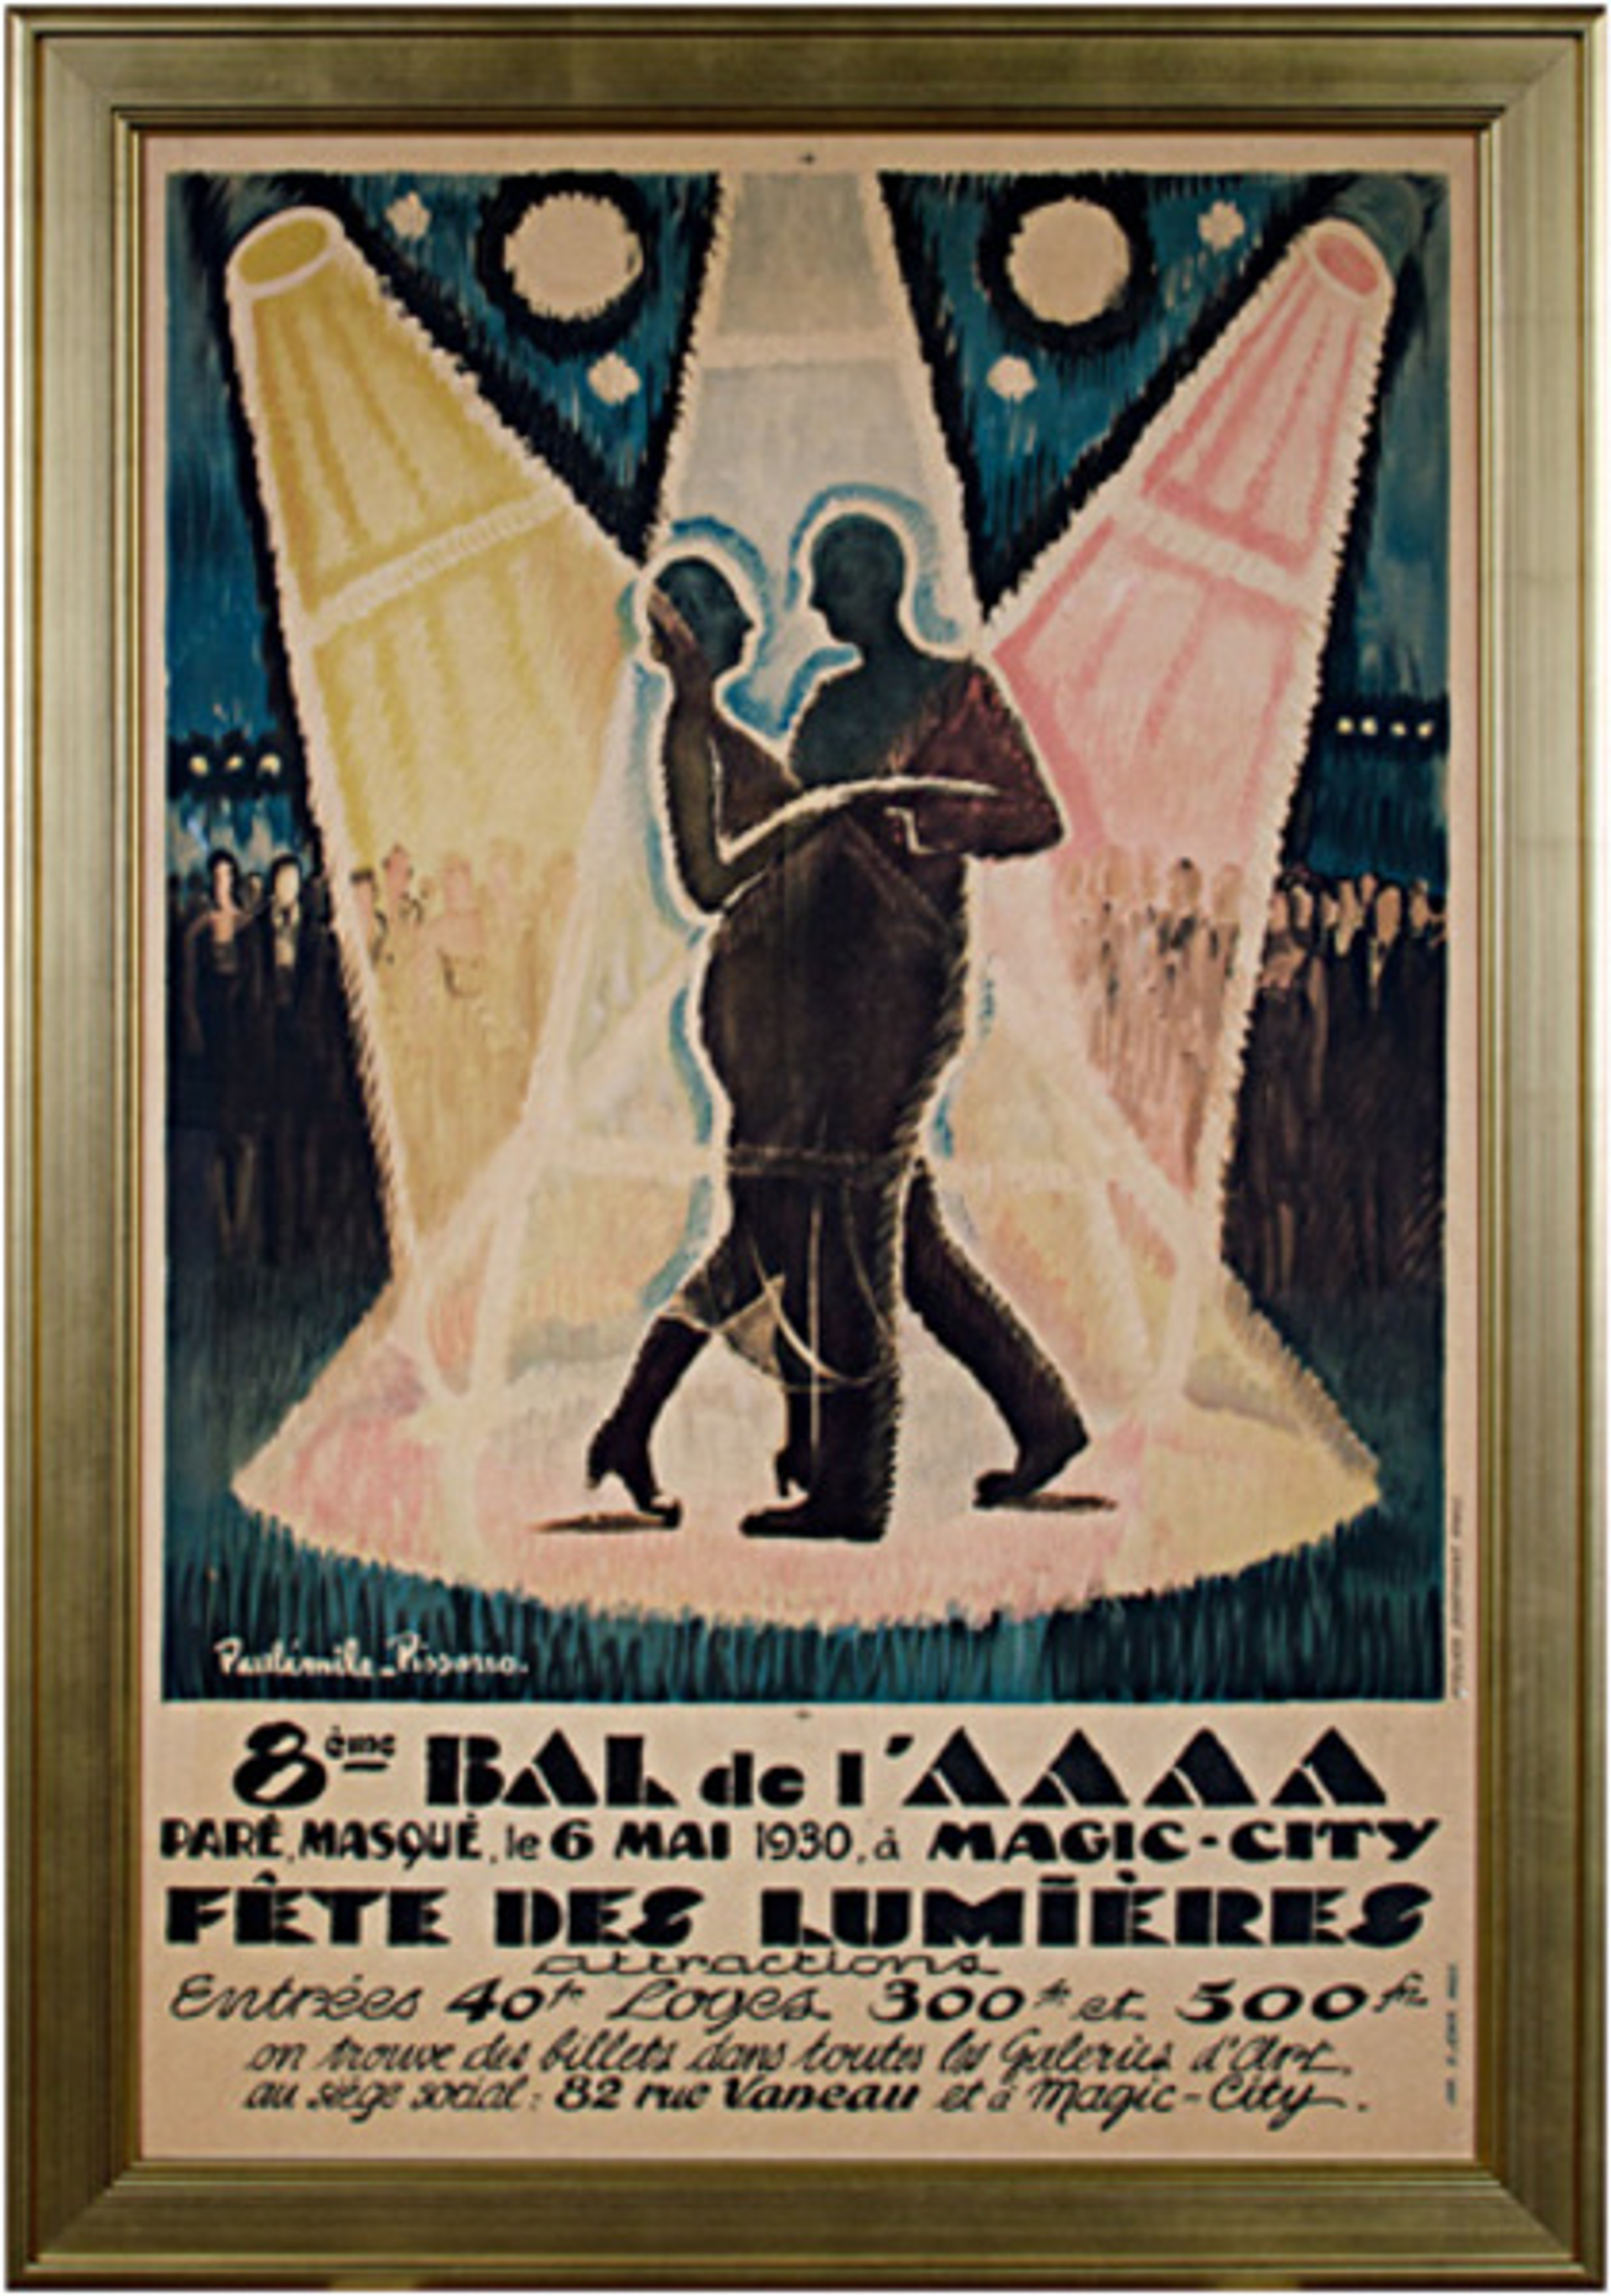 Bal de l'AAAA Festival of Light by Paul-Emile Pissarro